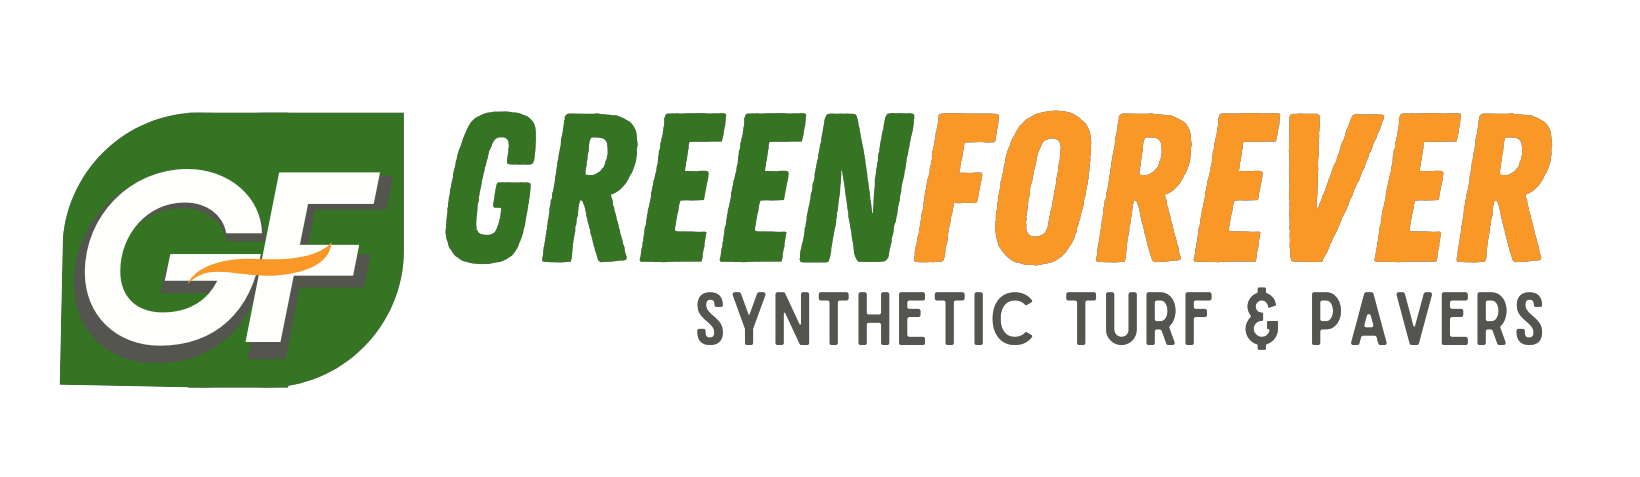 Green Forever Turf Logo Trans